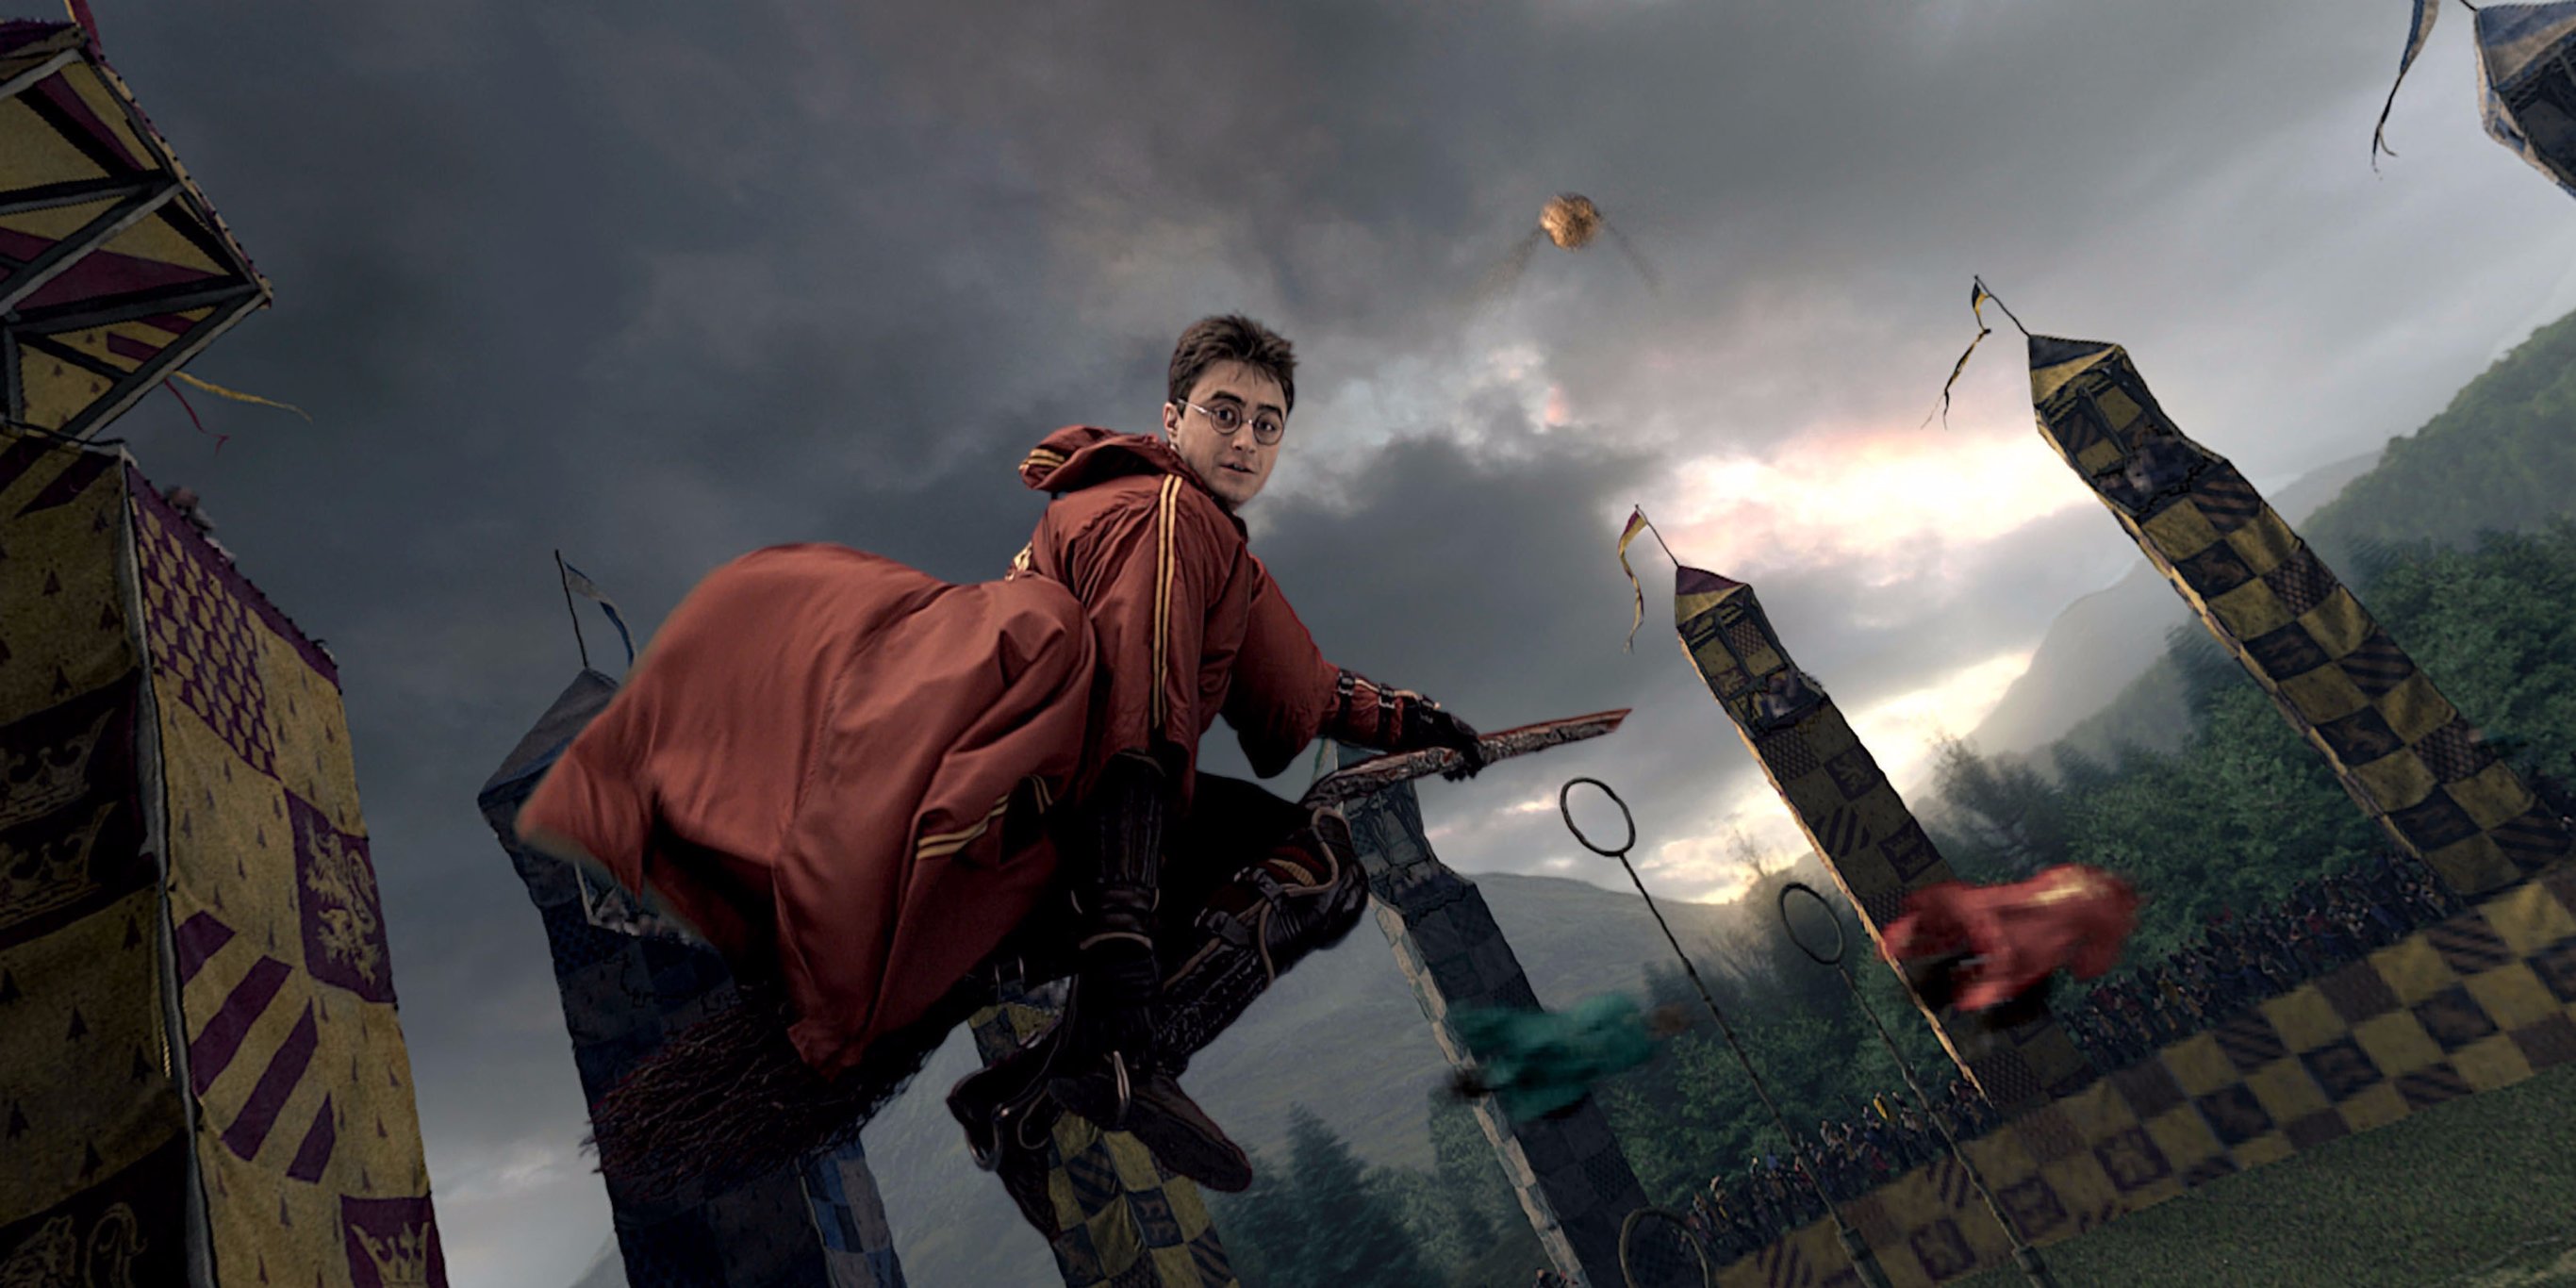 Cẩn thận, nếu không bạn sẽ té khỏi chổi bay sau khi biết 21 sự thật về 'Harry Potter'